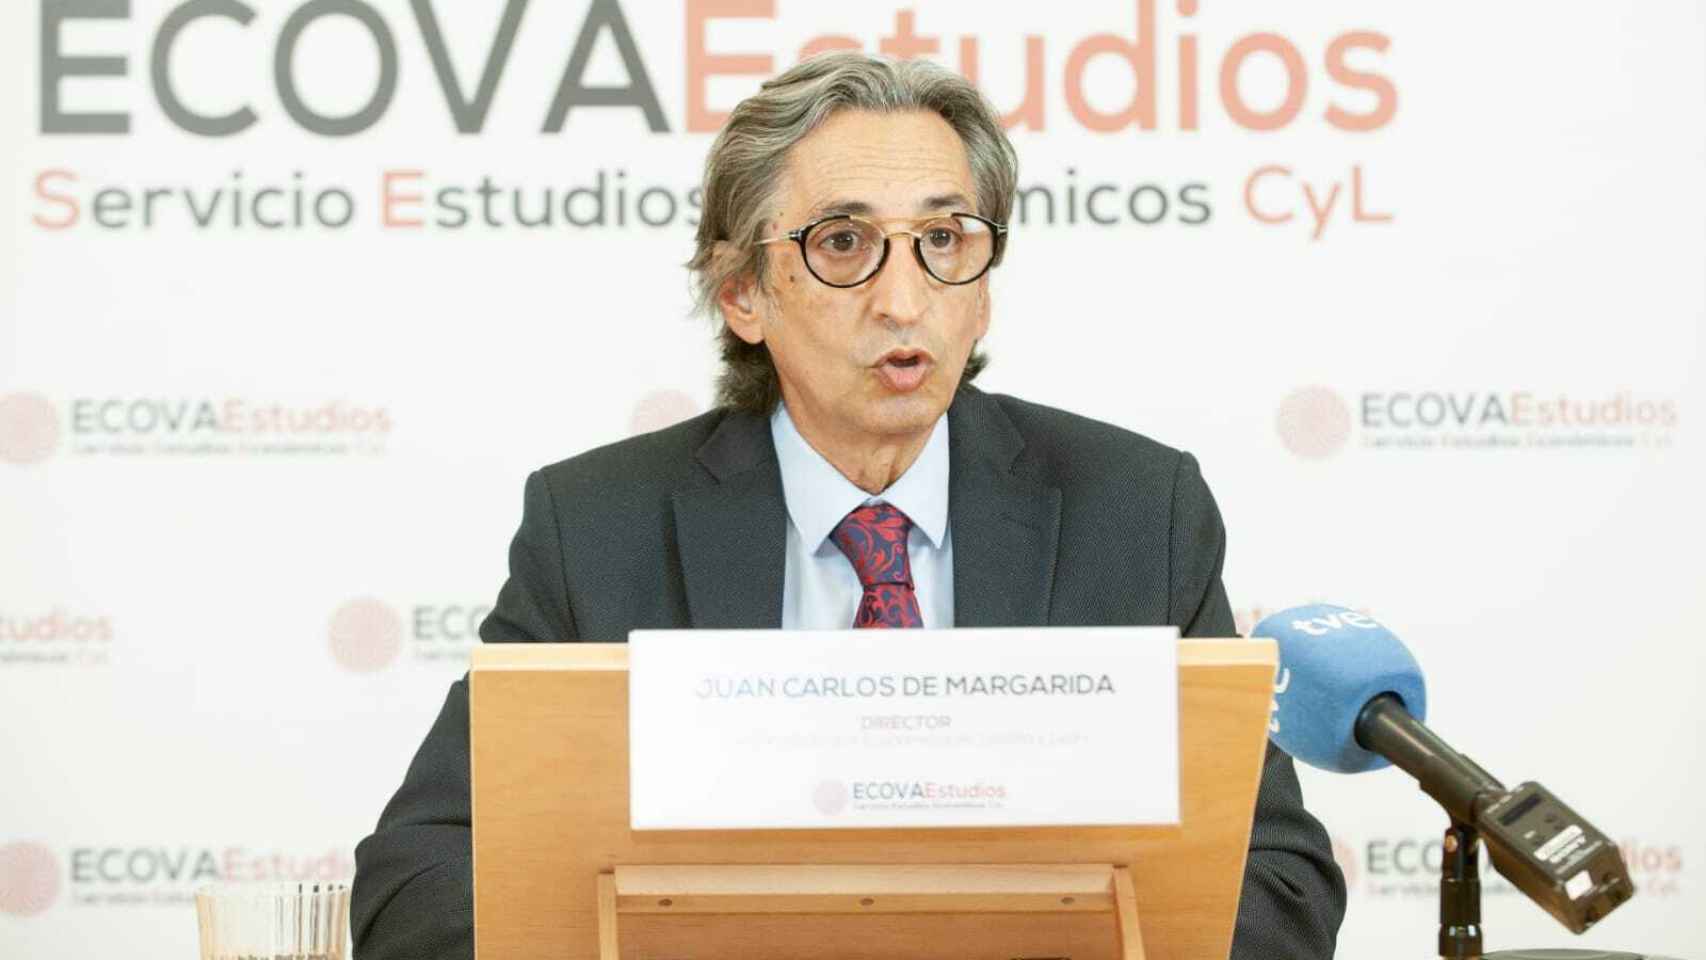 Juan Carlos de Margarida, director de ECOVAEstudios